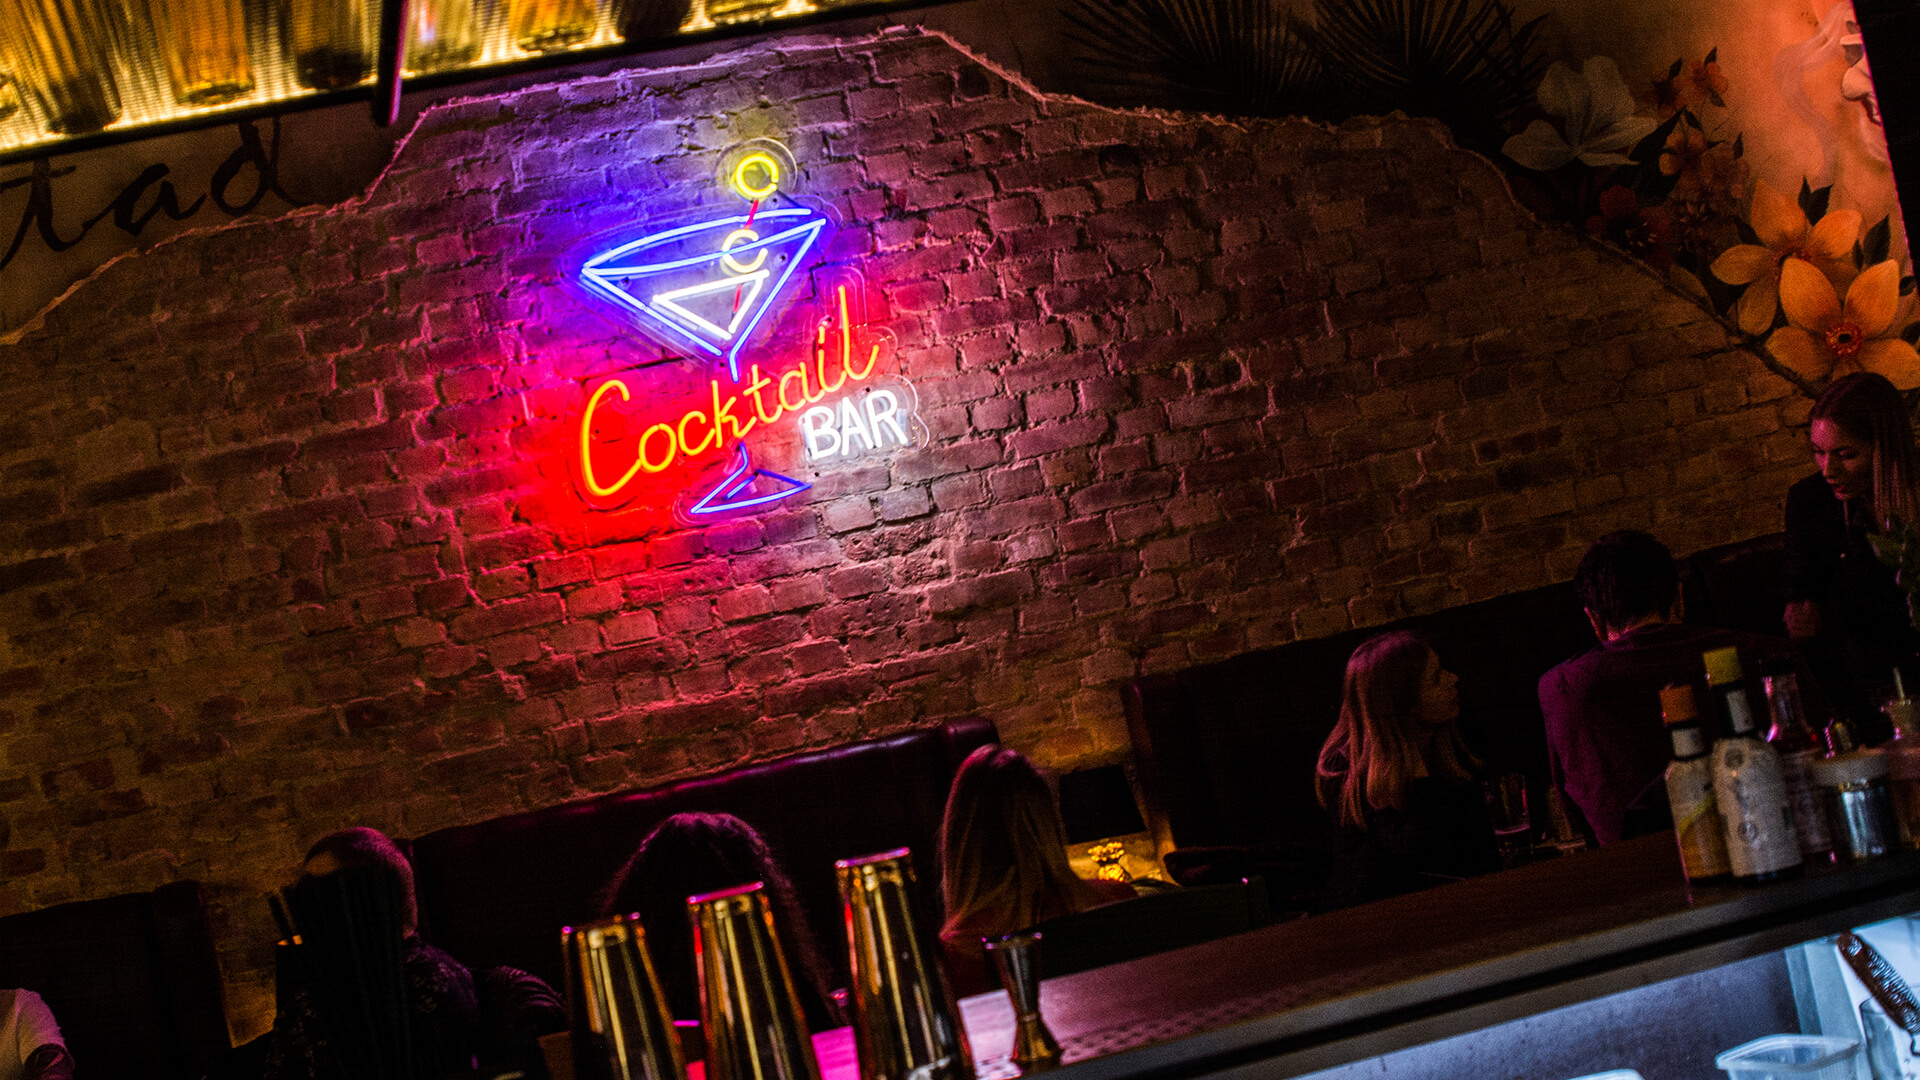 cuba libre Kuba kieliszek cocktailbar cocktail bar koktail - cuba-libre-neon-kieliszek-na-scianie-z-cegiel-wewnatrz-restauracji-coctail-baru-neon-kolorowy-na-scianie-nad-stolikami-neon-na-zamowienie-podswietlany-szklany-poznan